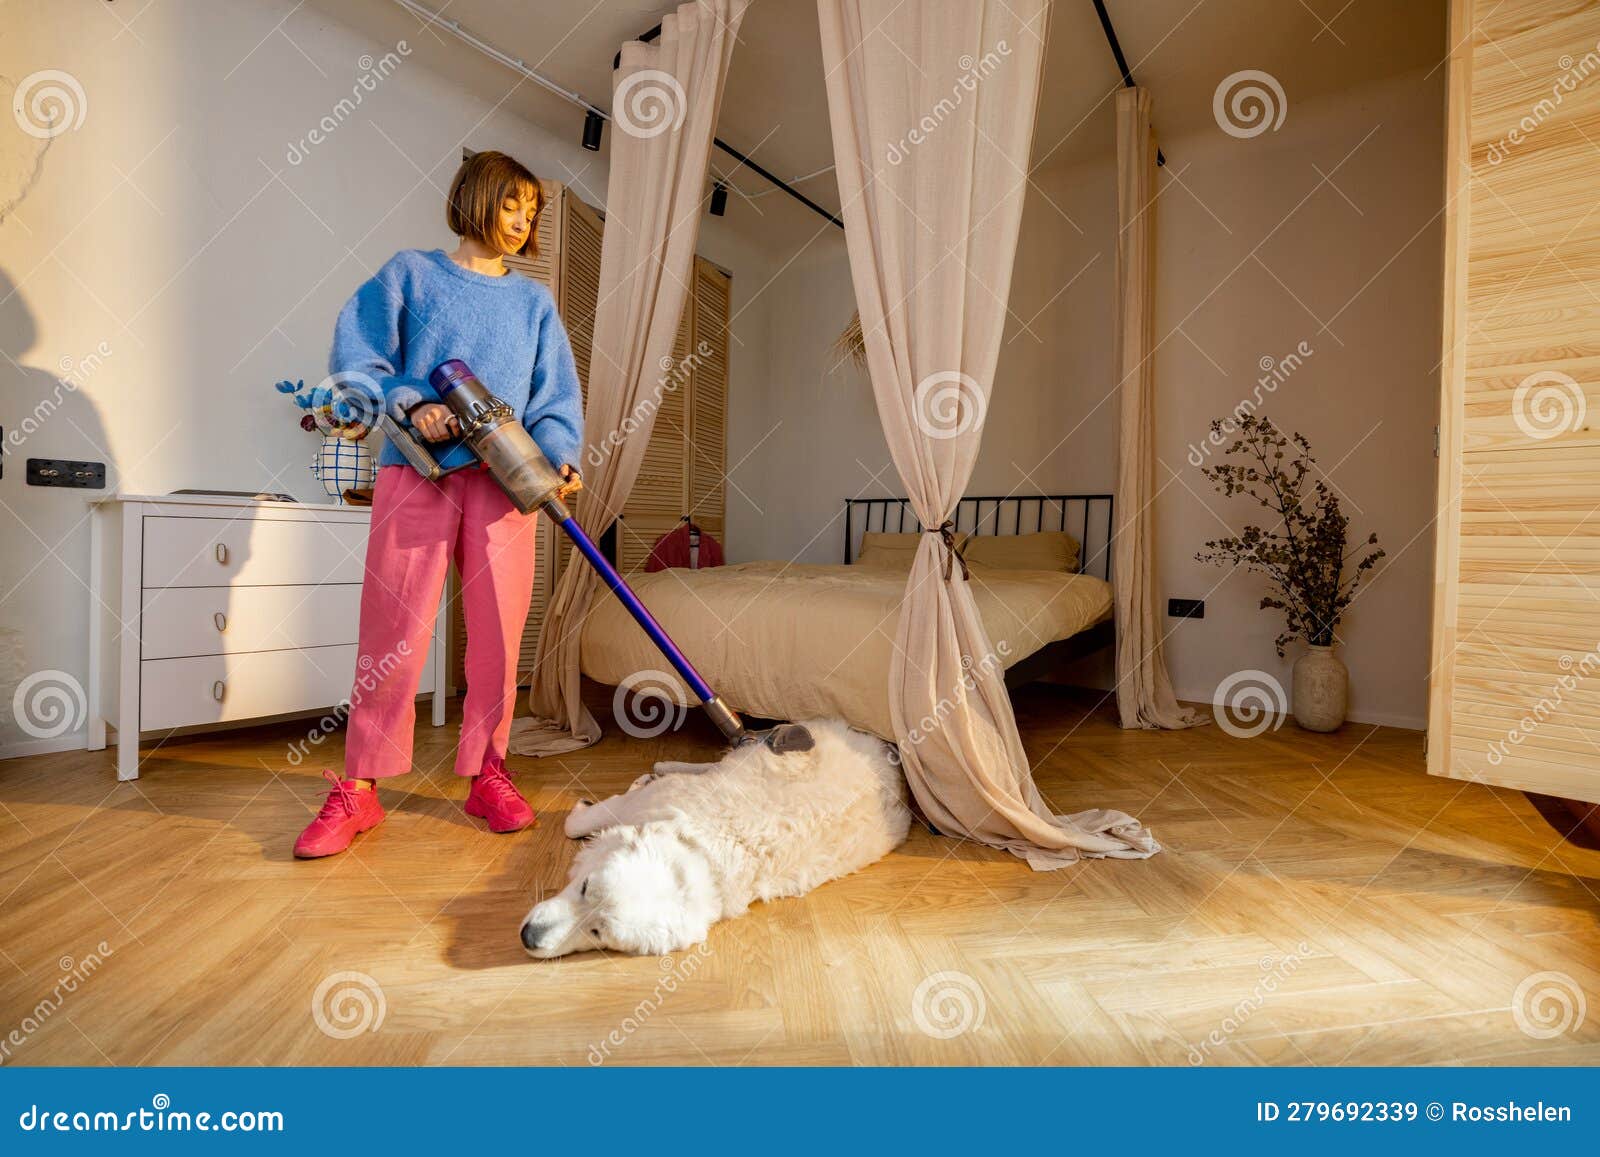 Mujer limpieza de sofá con aspiradora en casa. concepto de